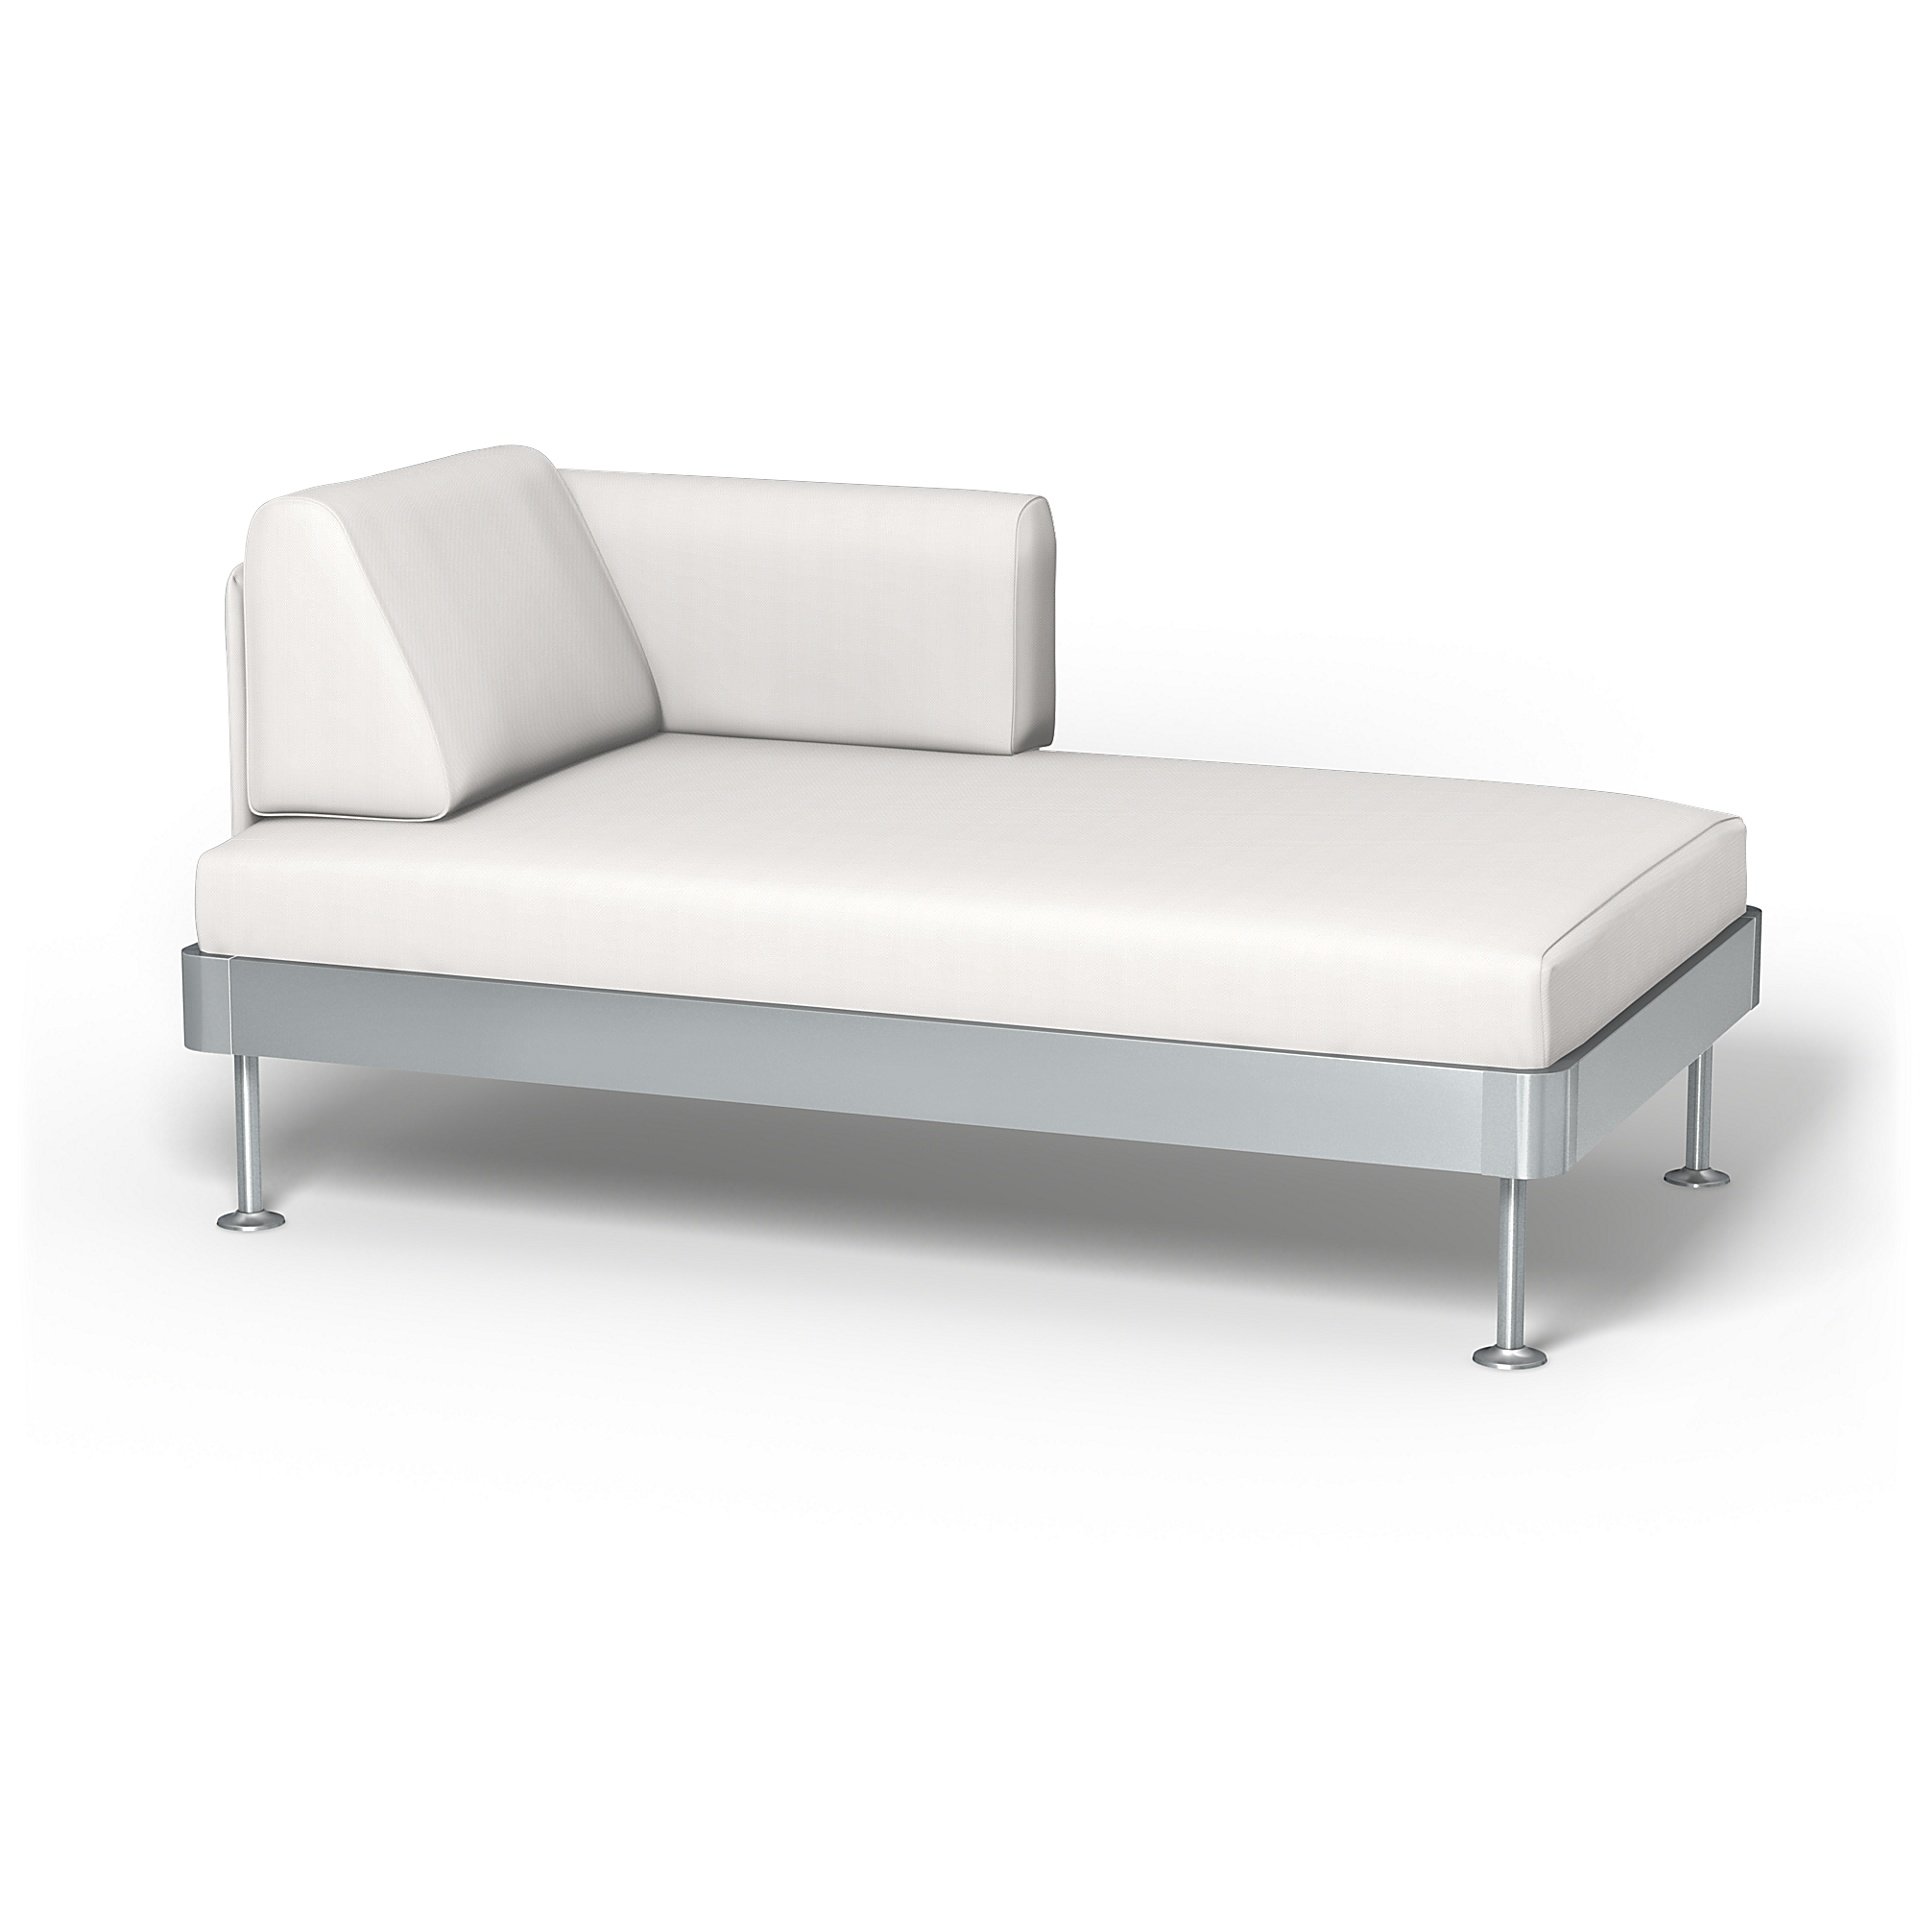 IKEA - Delaktig Chaise Longue Cover, Soft White, Linen - Bemz